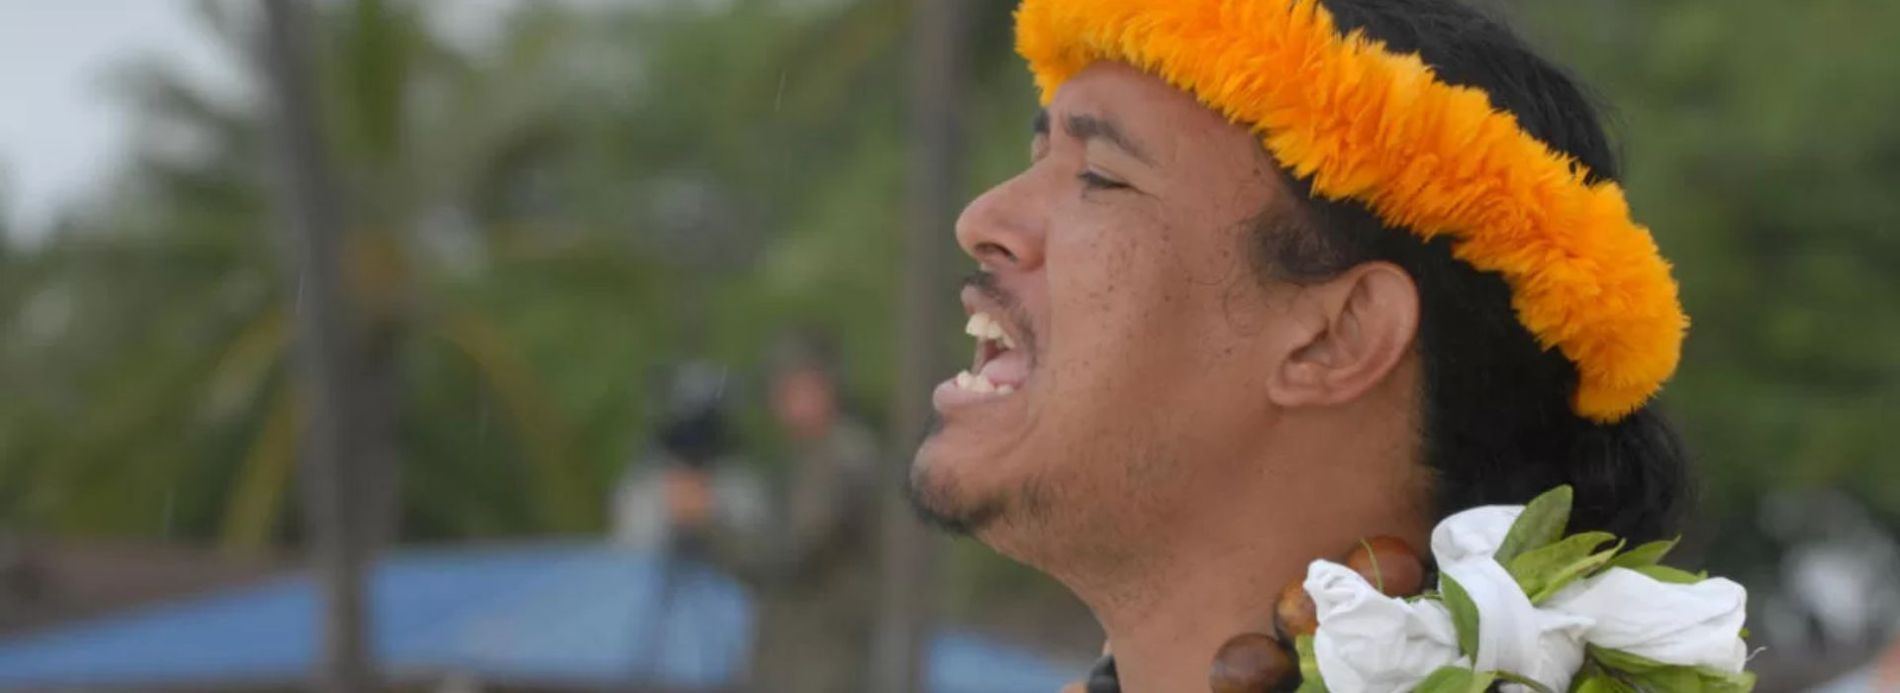 Kauai man singing